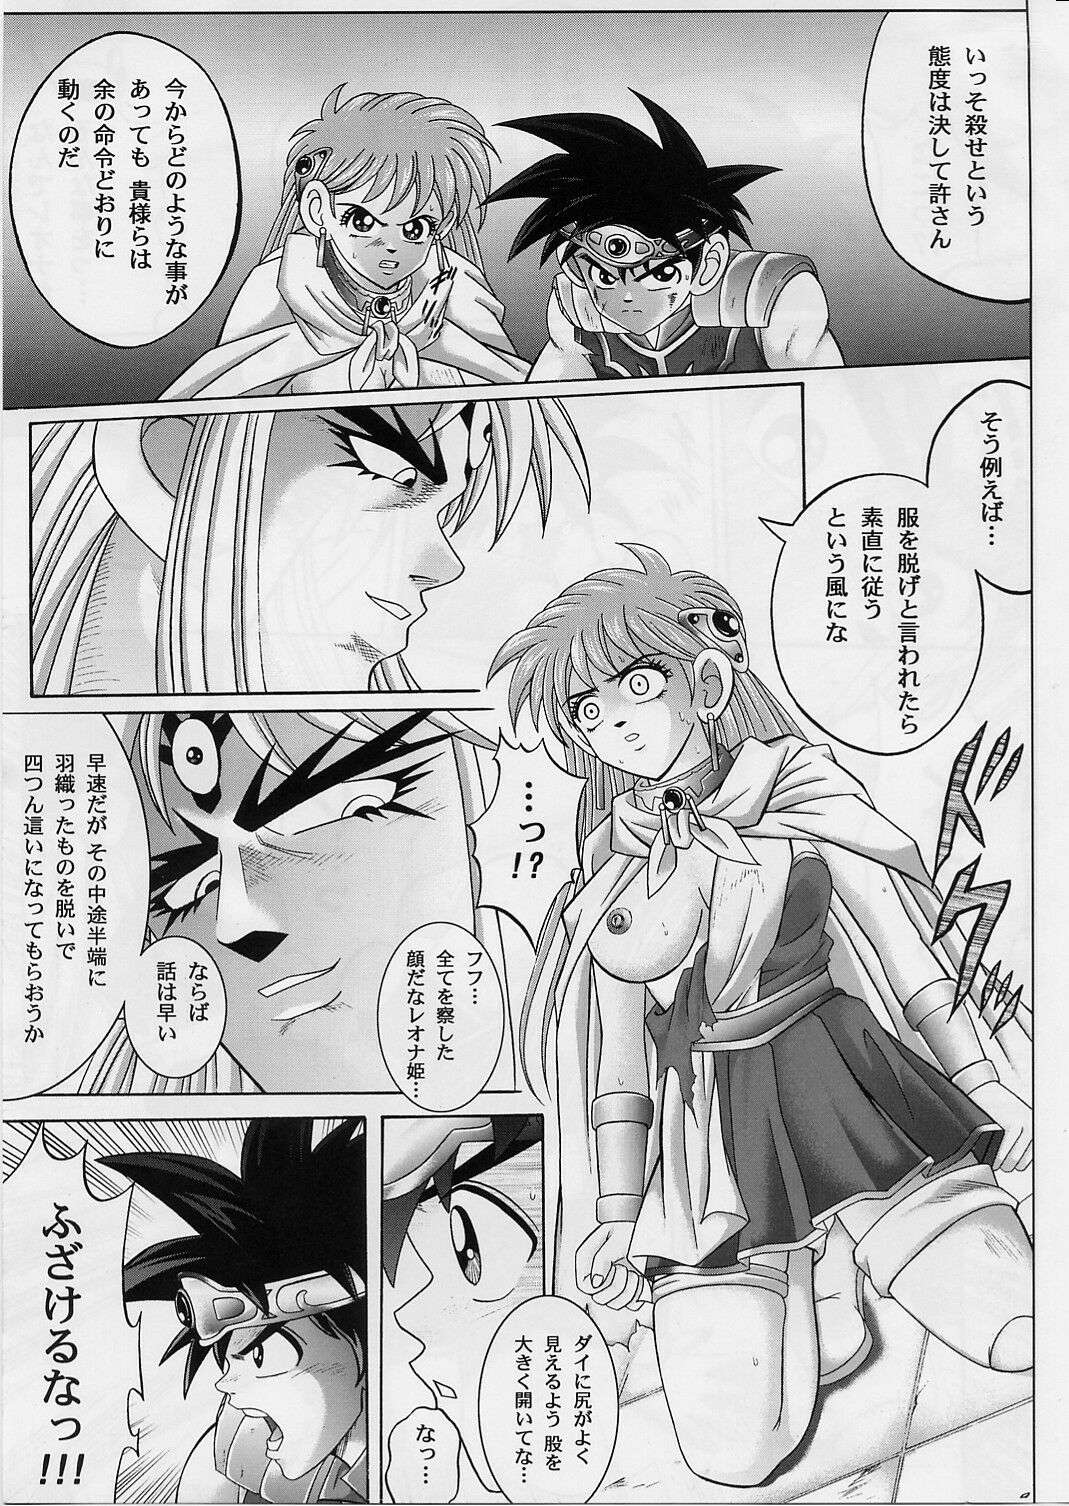 [Cyclone (Izumi, Reizei)] DIME ALLIANCE 2 (Dragon Quest Dai no Daibouken) page 6 full